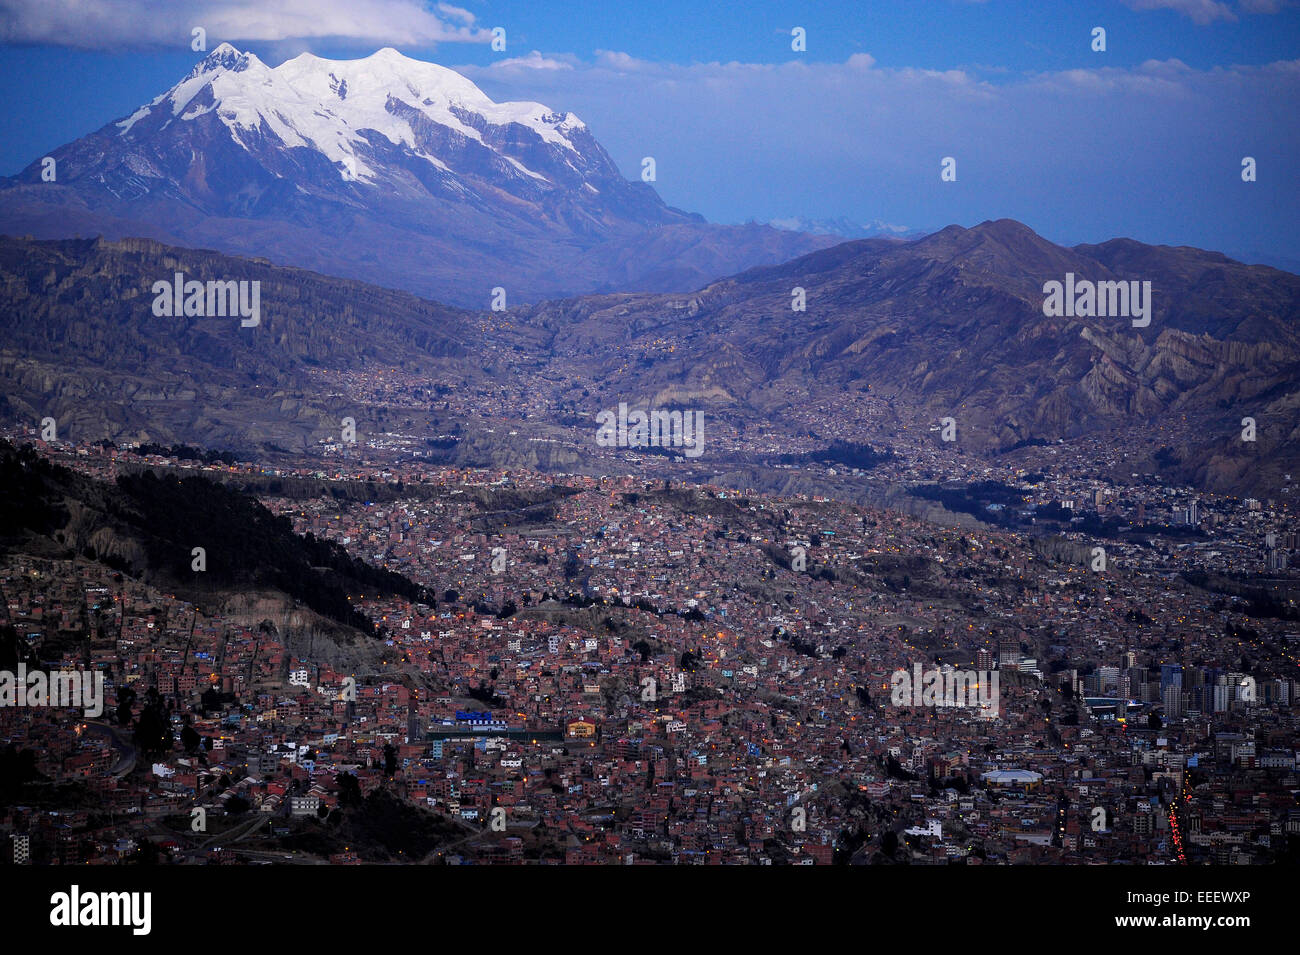 Die Stadt La Paz, Bolivien sitzt eine Höhe von 12.000 Fuß über dem Meeresspiegel und ist die höchste administrative Hauptstadt der Welt. Stockfoto